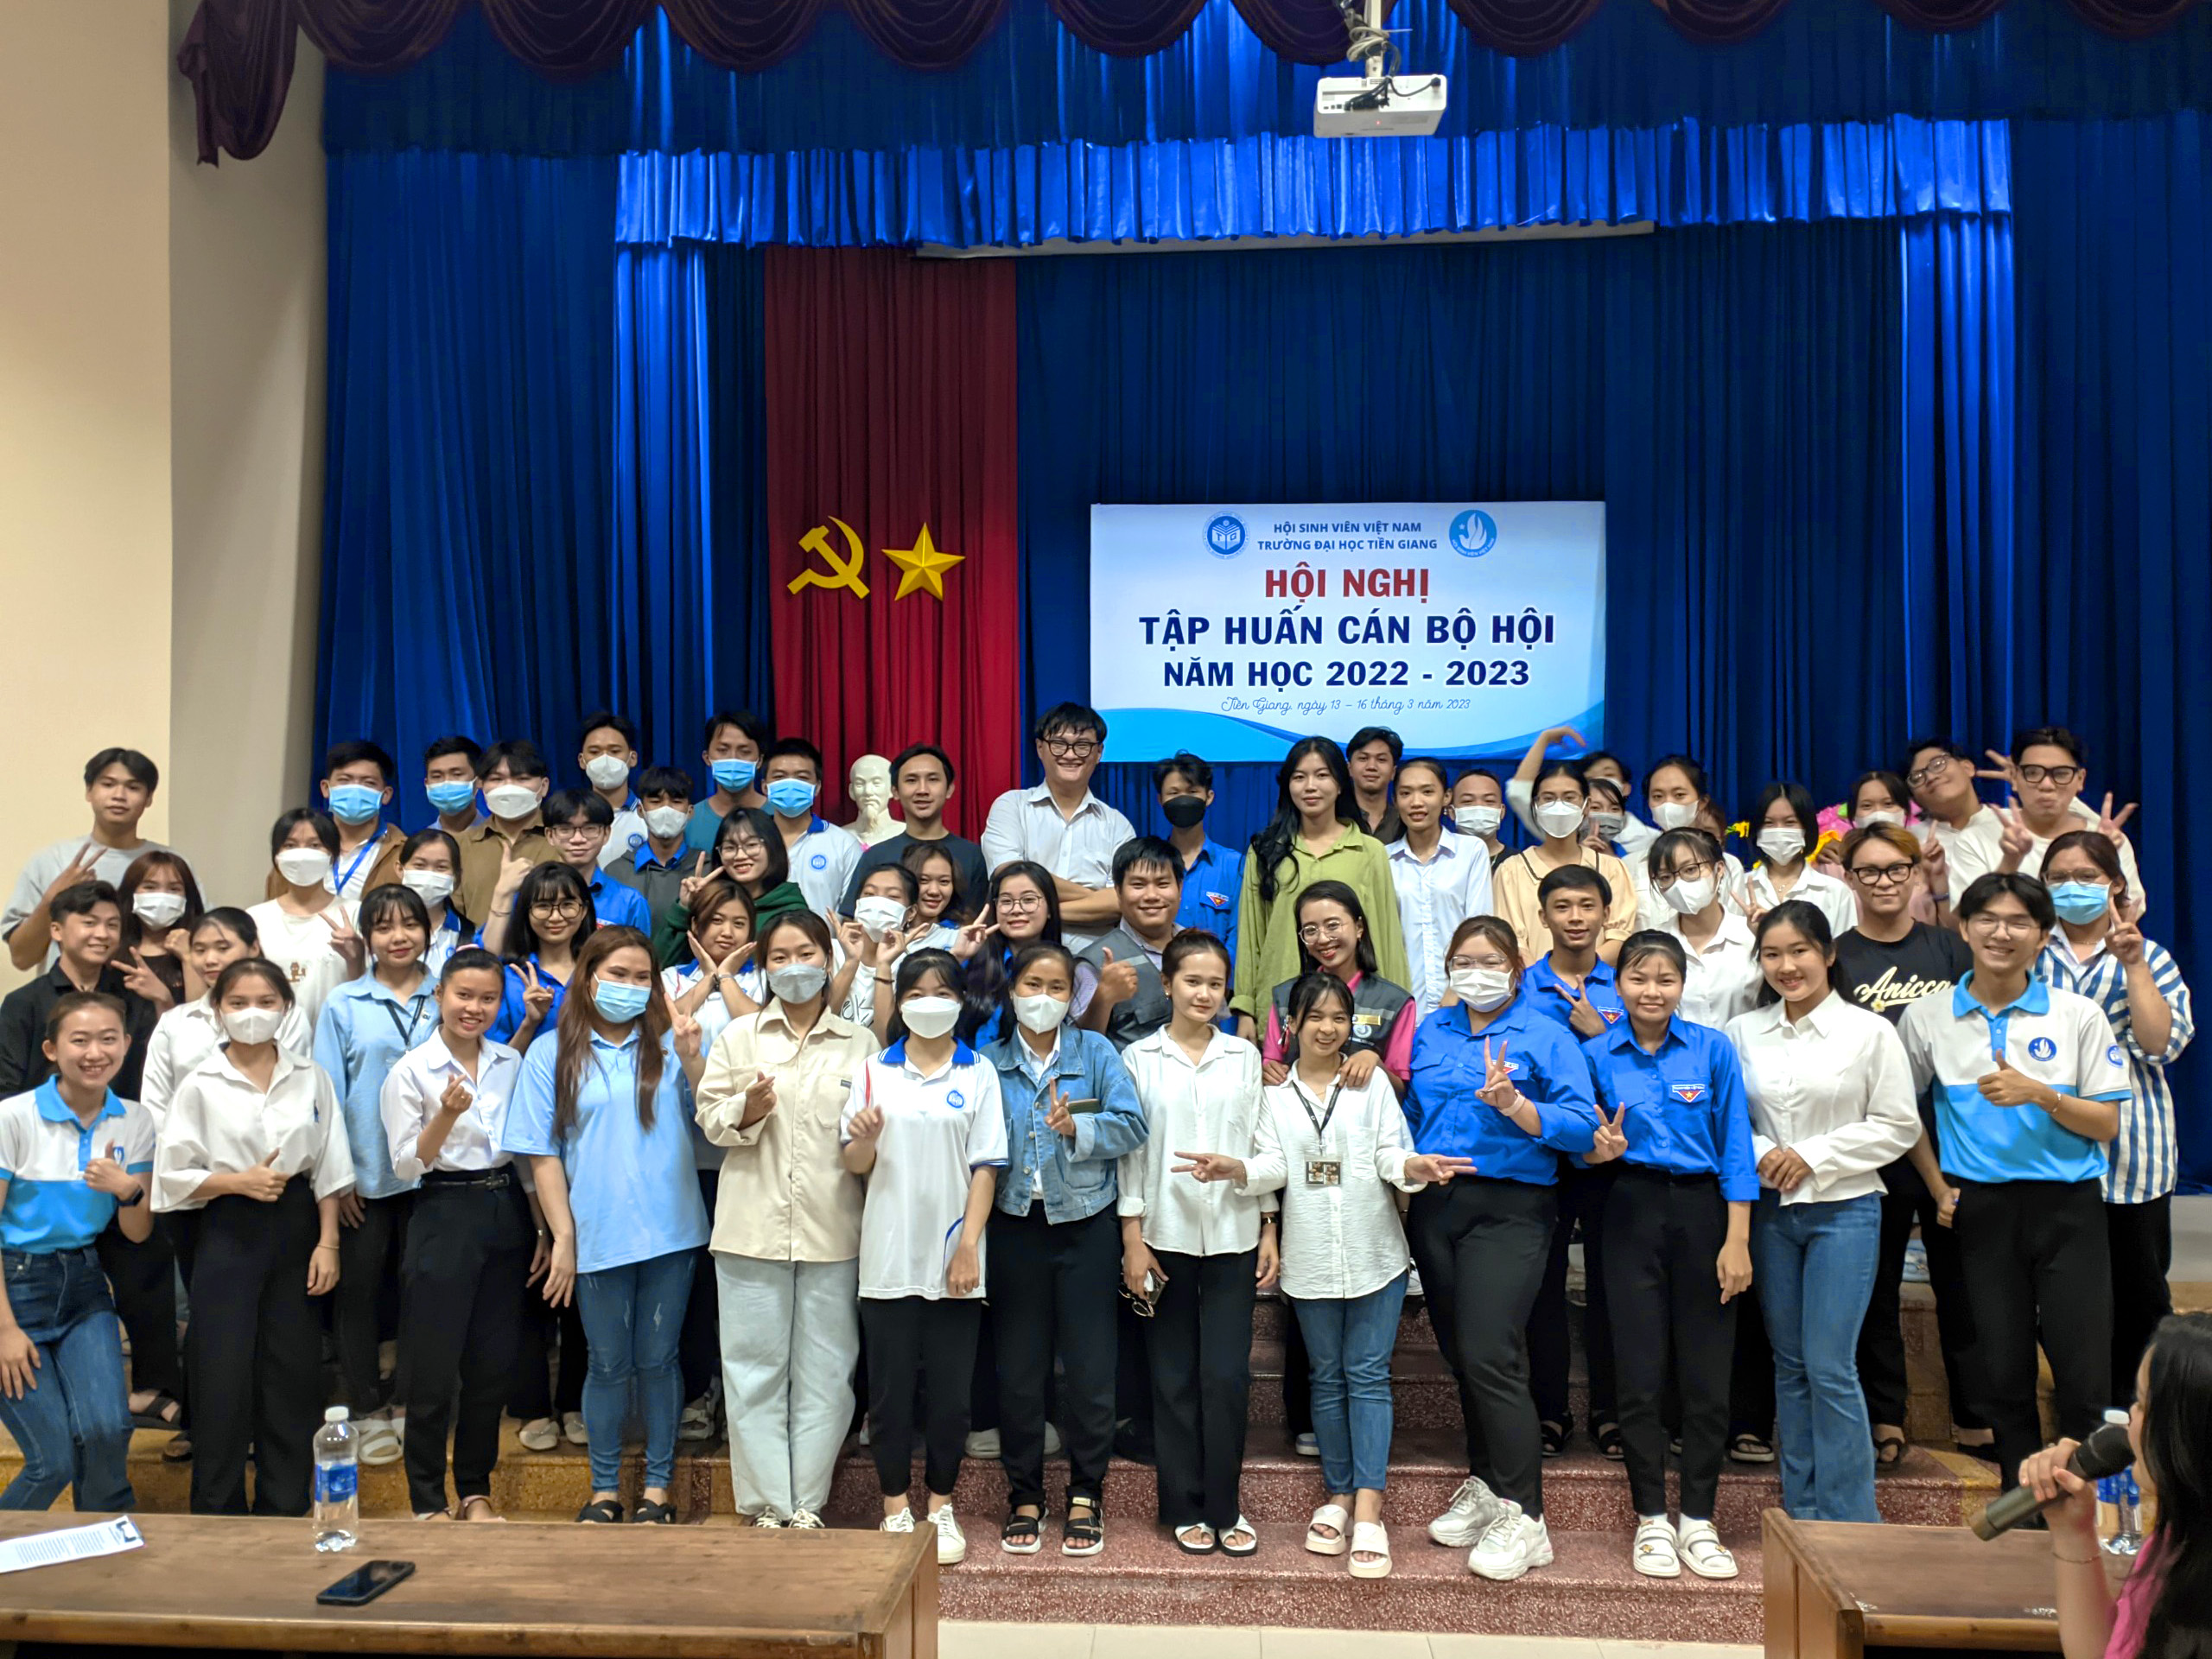 Hội Sinh viên Trường Đại học Tiền Giang: Tập huấn công tác tổ chức xây dựng Hội cho cán bộ Hội năm học 2022 - 2023